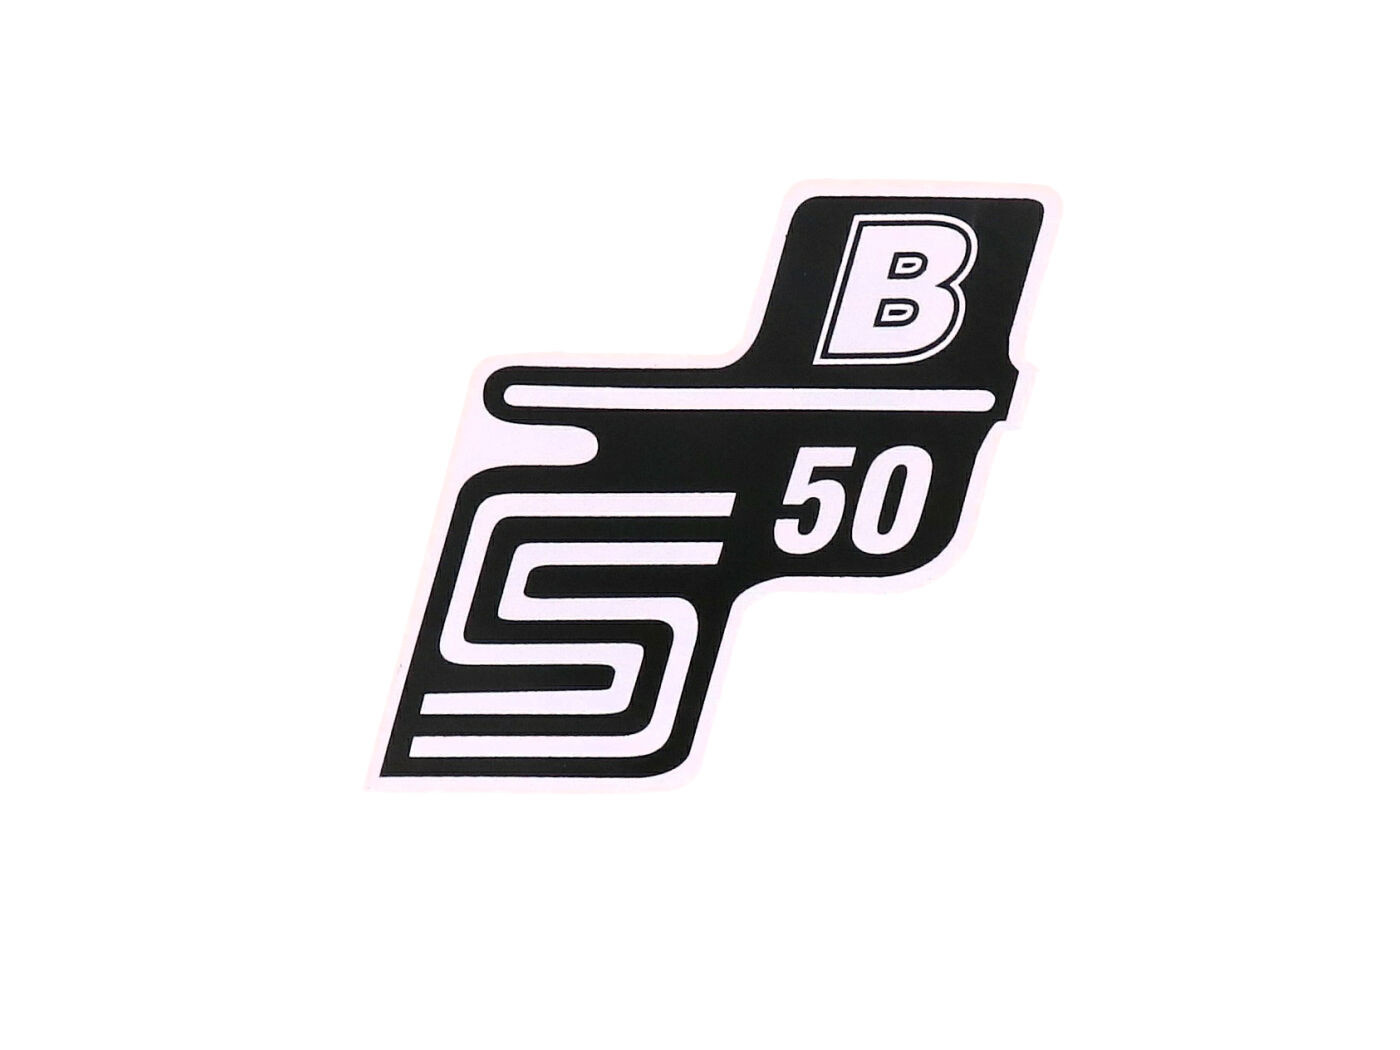 Írás S50 B fólia / matrica fehér Simson S50-hez